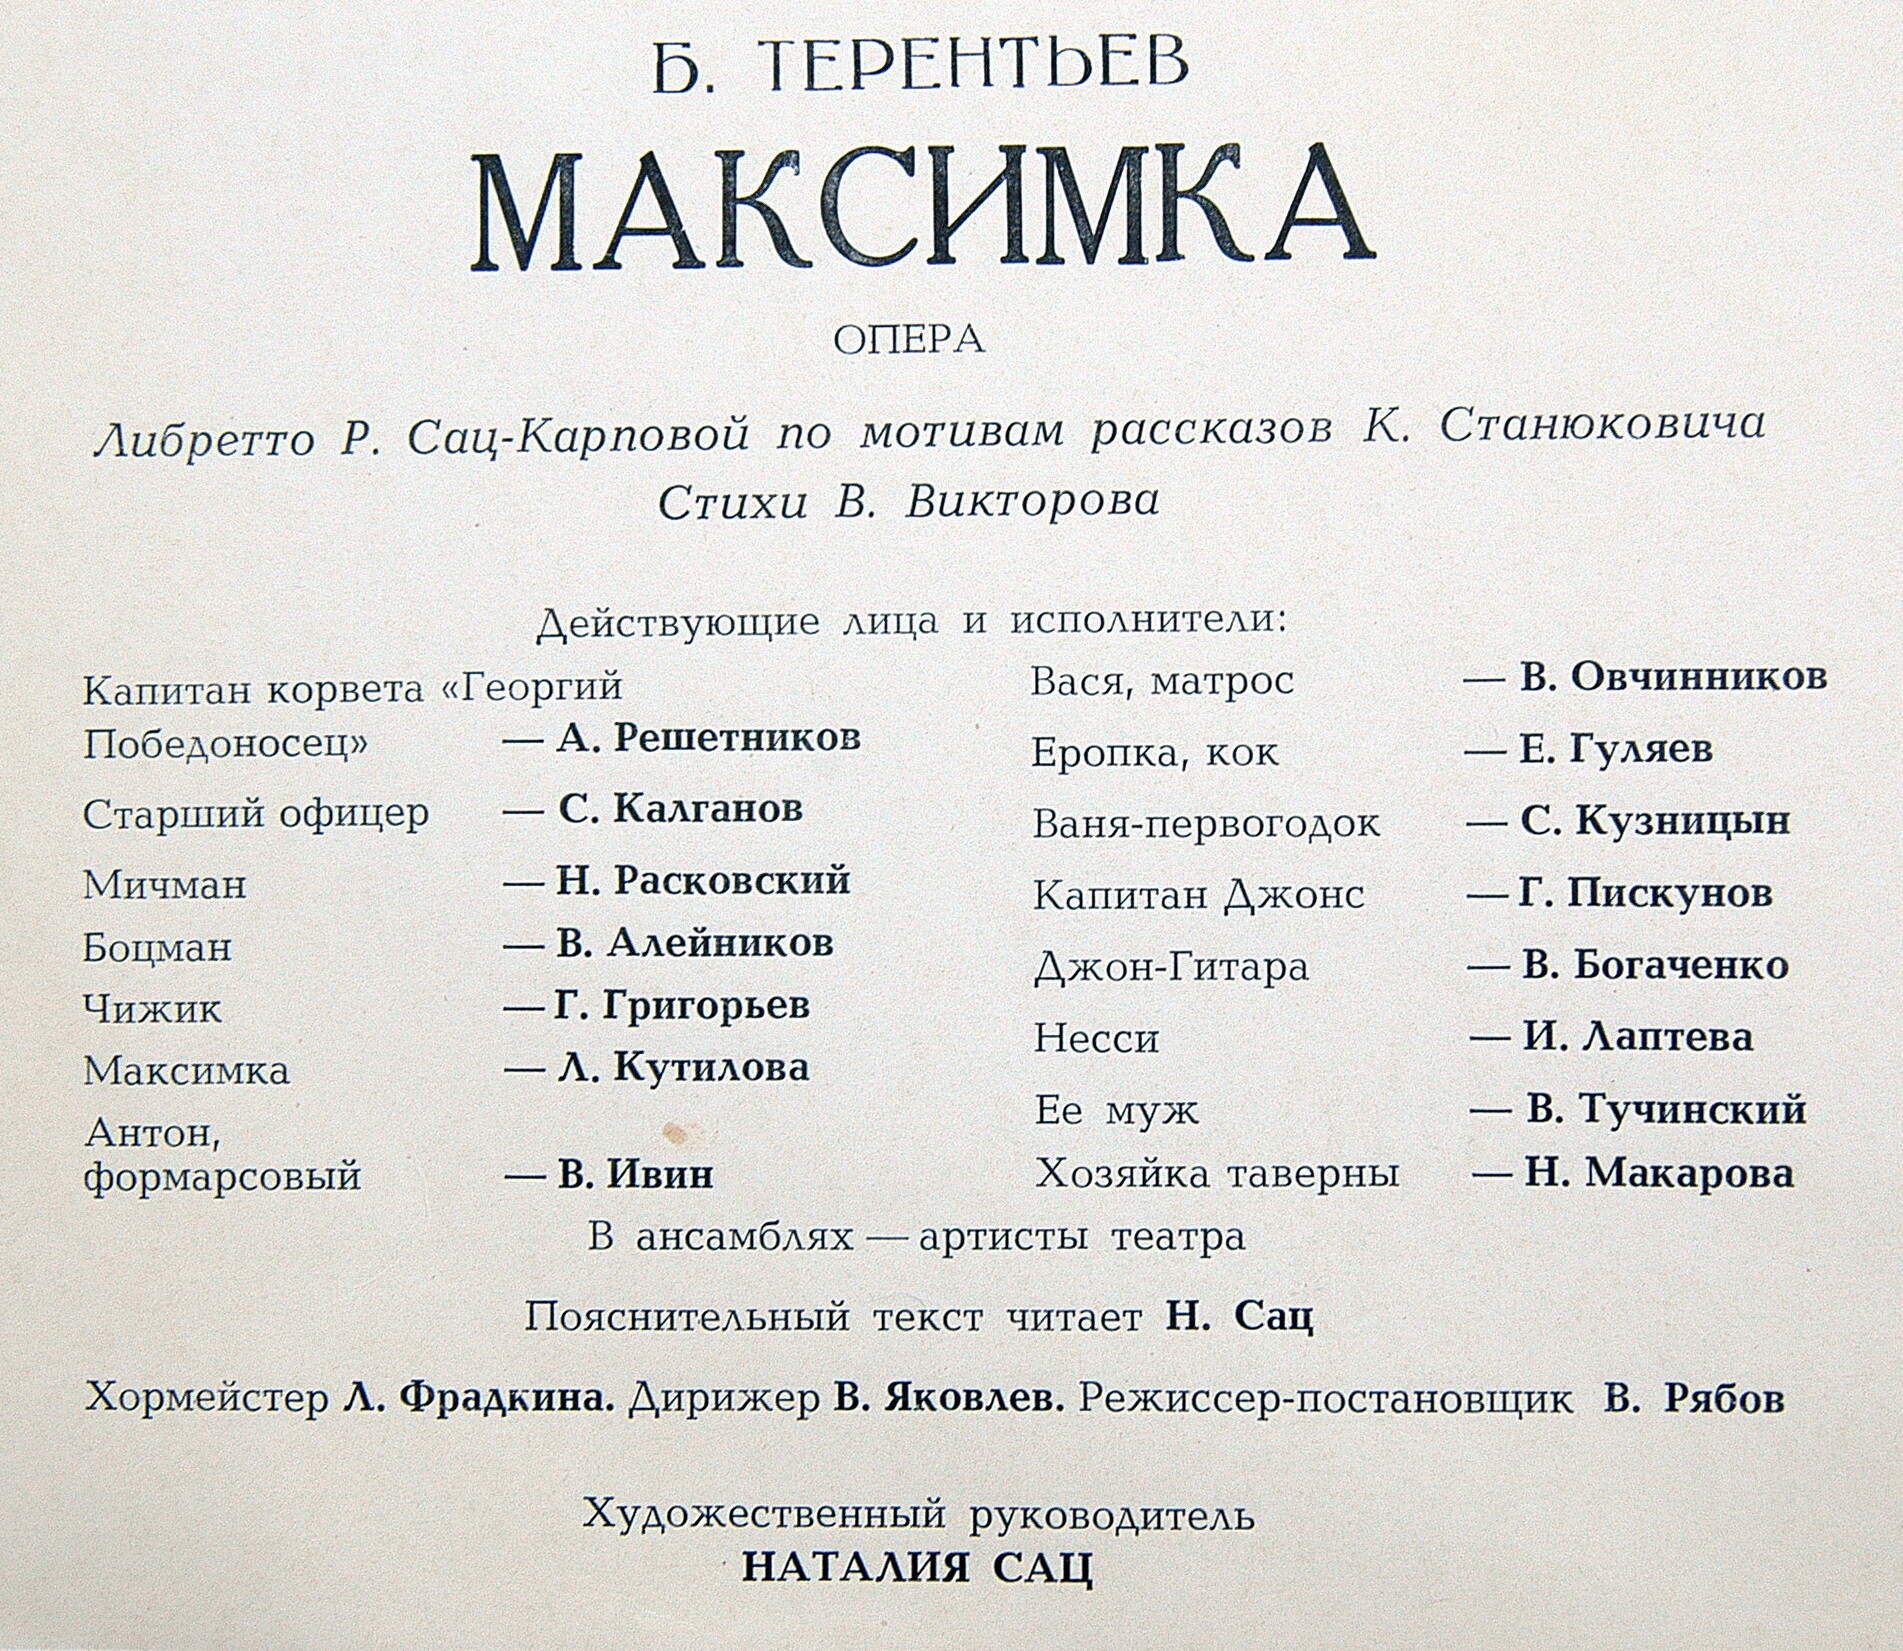 Б. ТЕРЕНТЬЕВ (1913): «Максимка», опера